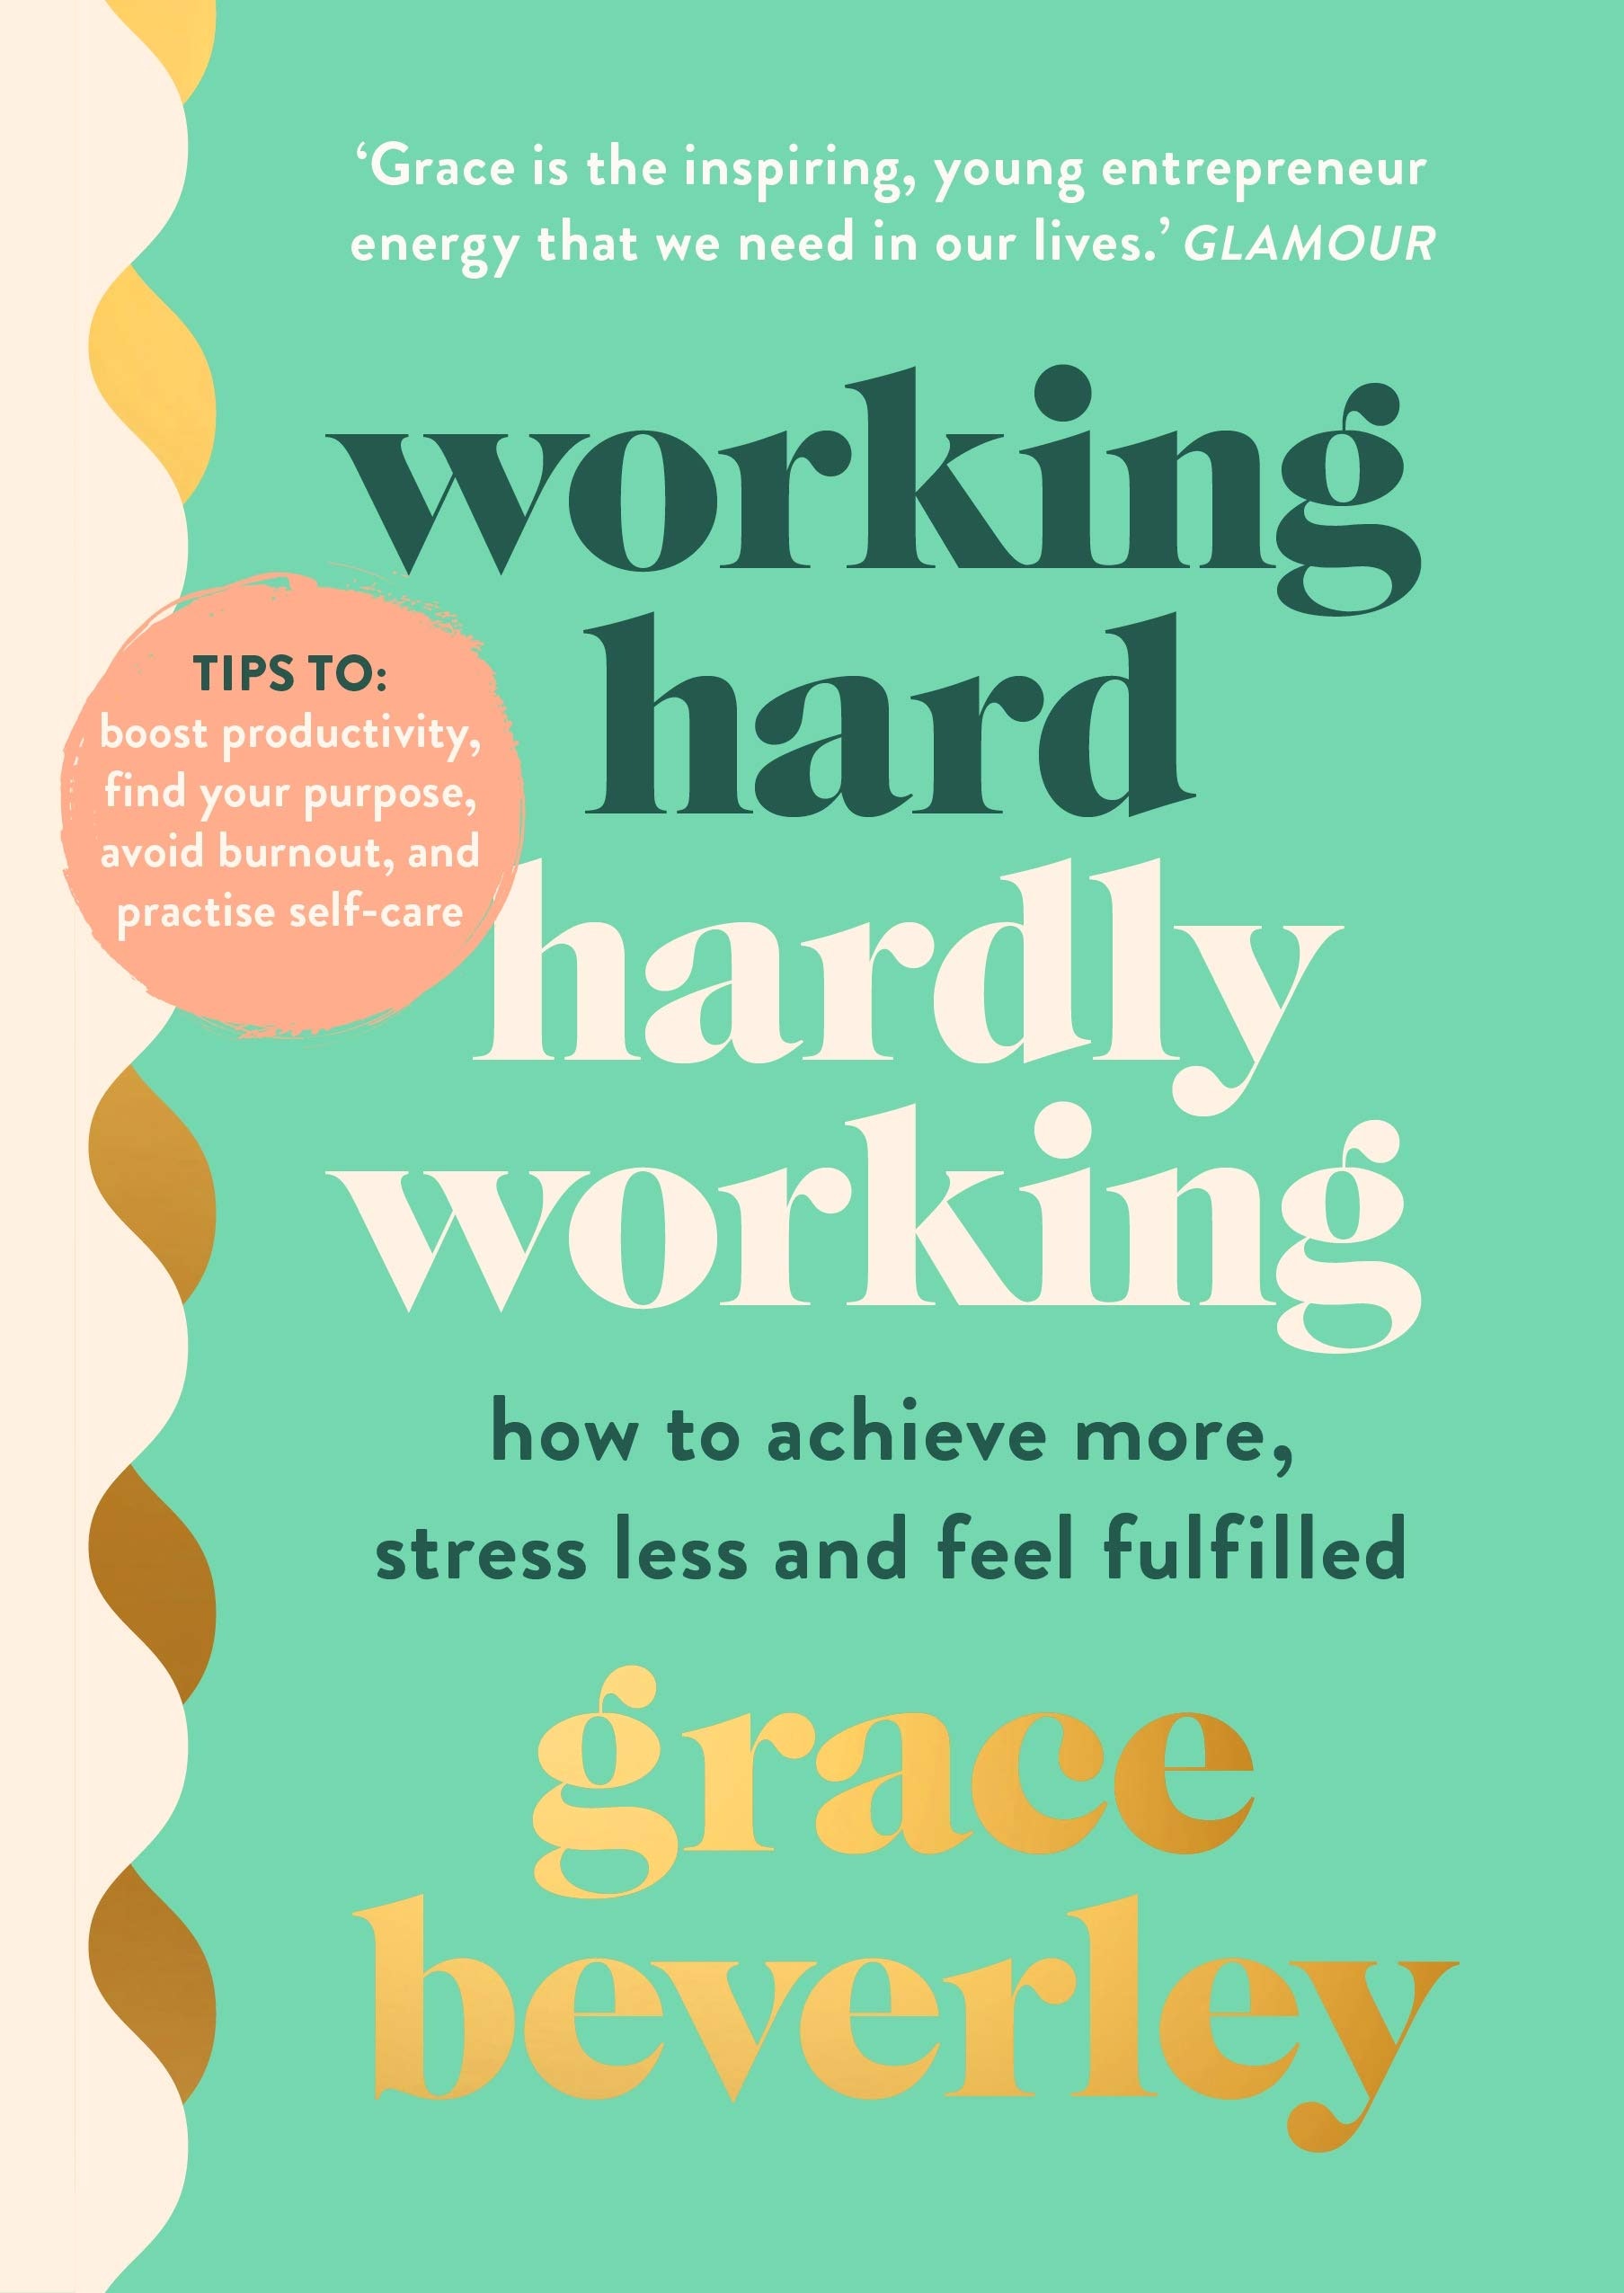 Comment être productif et maintenir la santé mentale, selon Grace Beverley